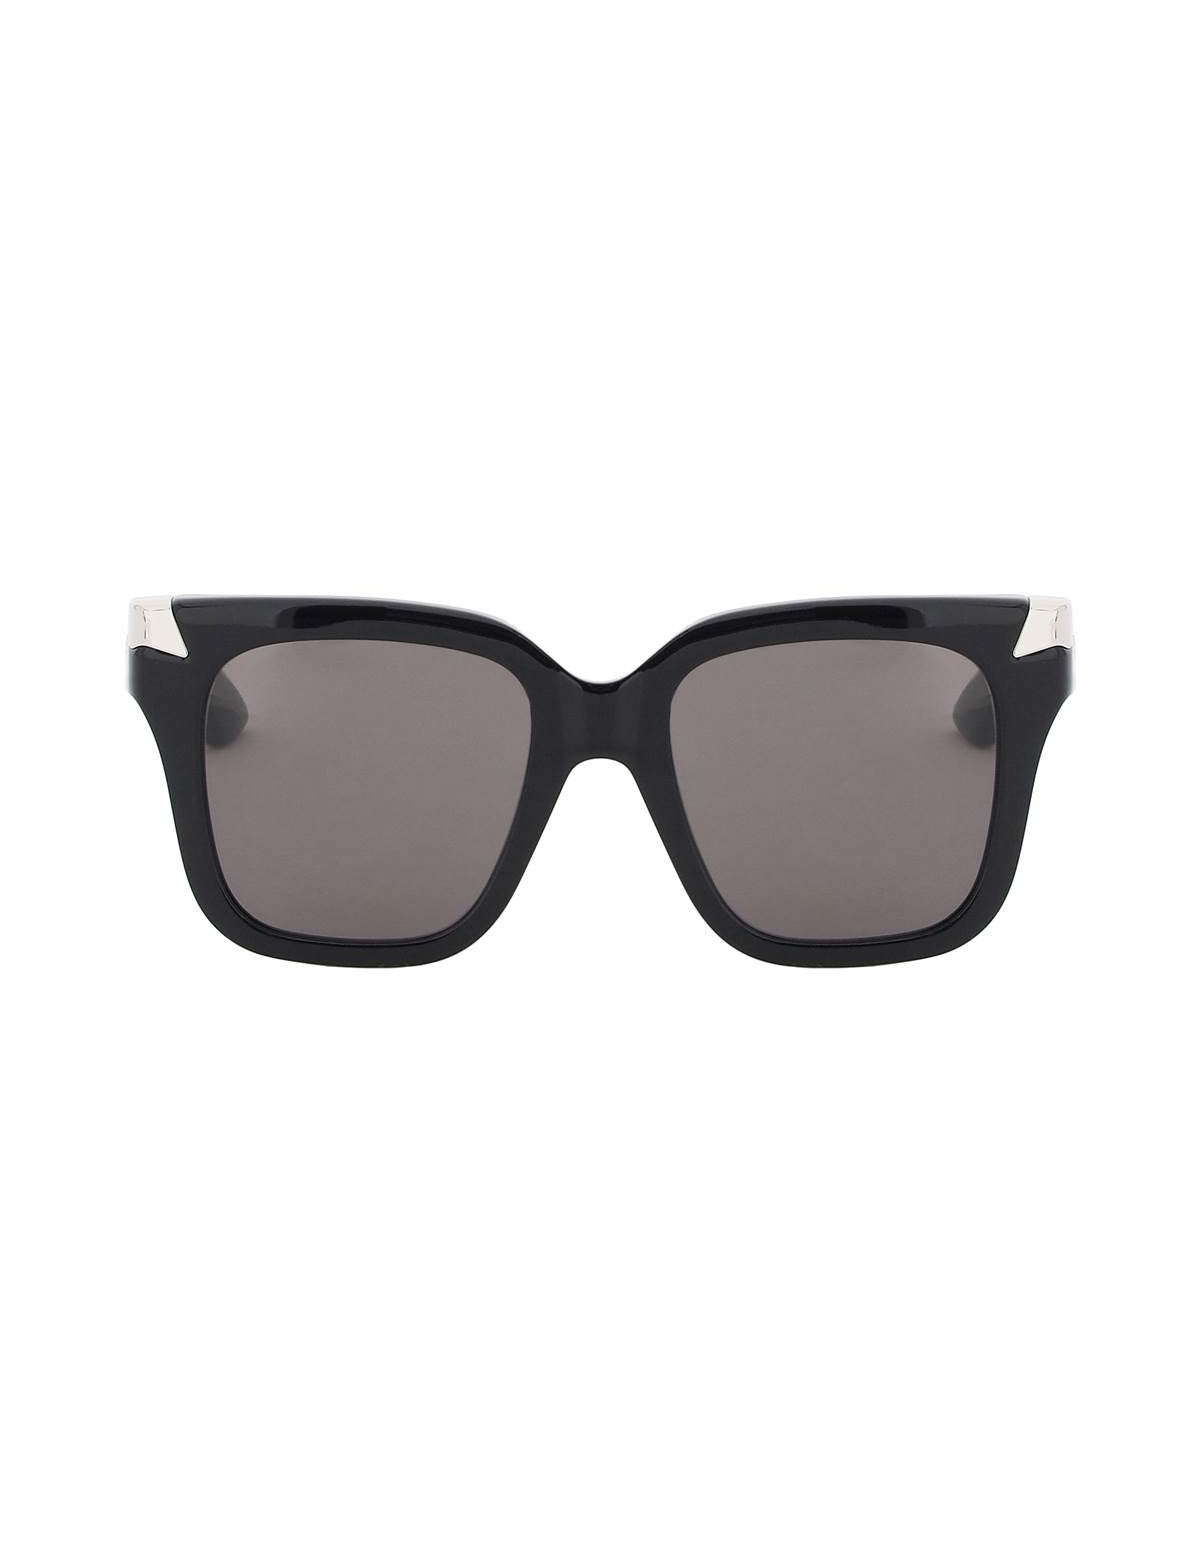 alexander-mcqueen-punk-oversized-sunglasses.jpg